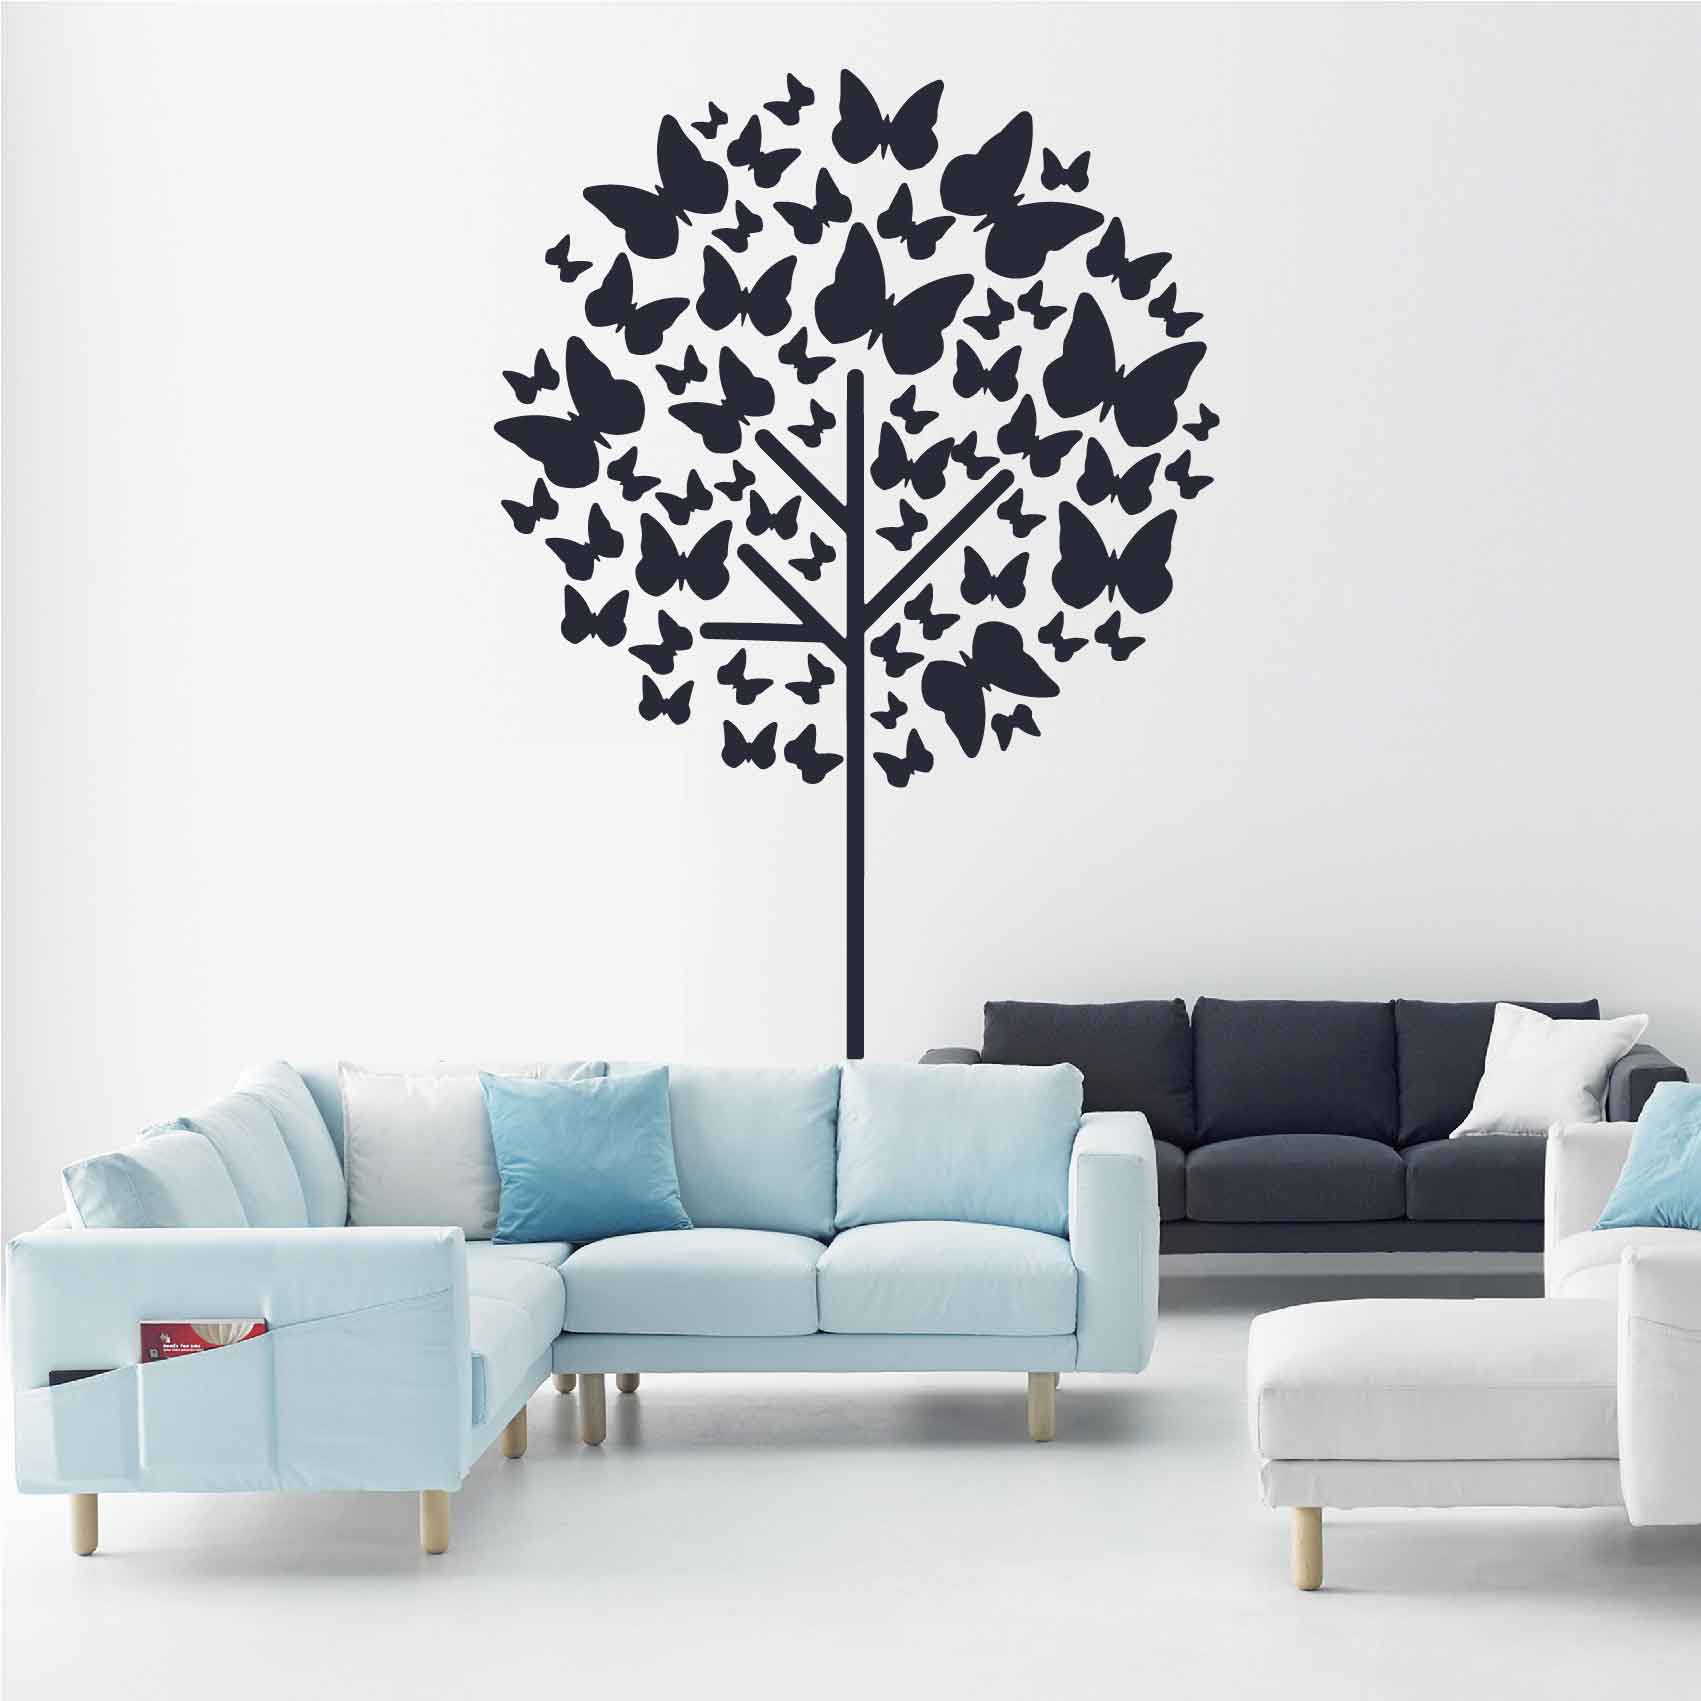 stickers-arbre-et-papillon-ref18arbre-autocollant-muraux-sticker-geant-arbre-deco-branche-noir-rose-gris-vert-blanc-chambre-salon